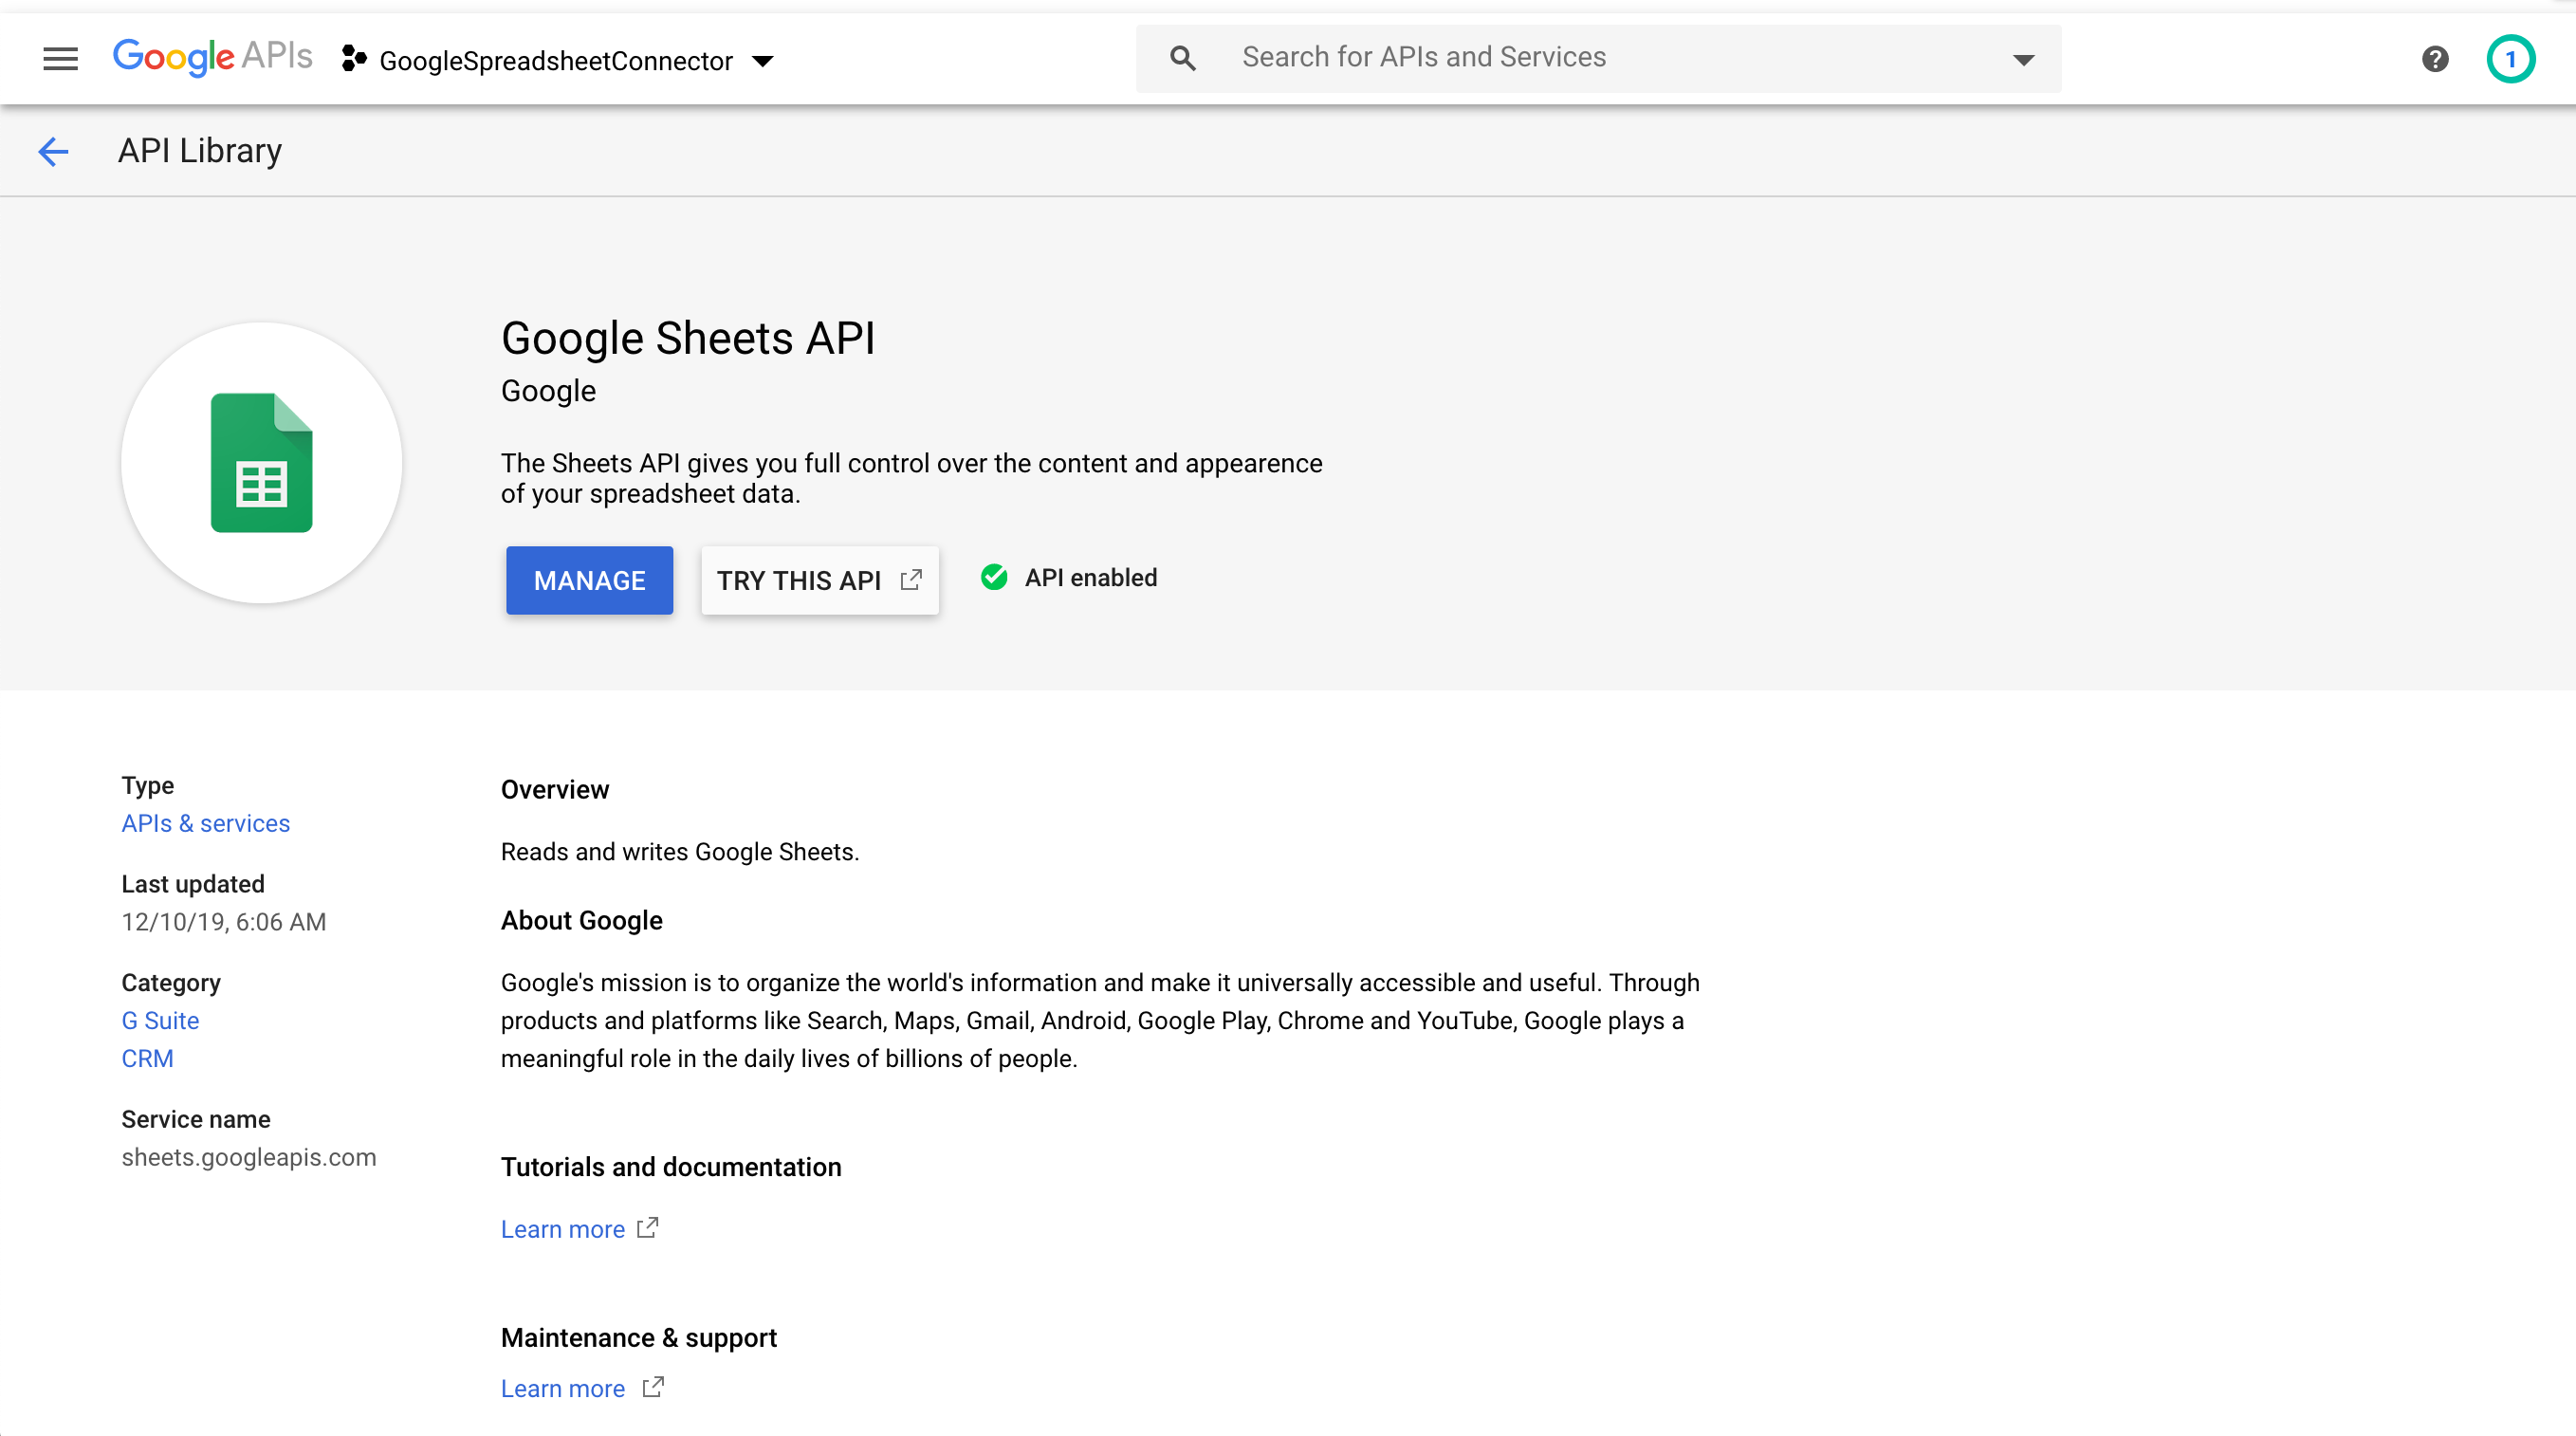 Enable Google Sheets API